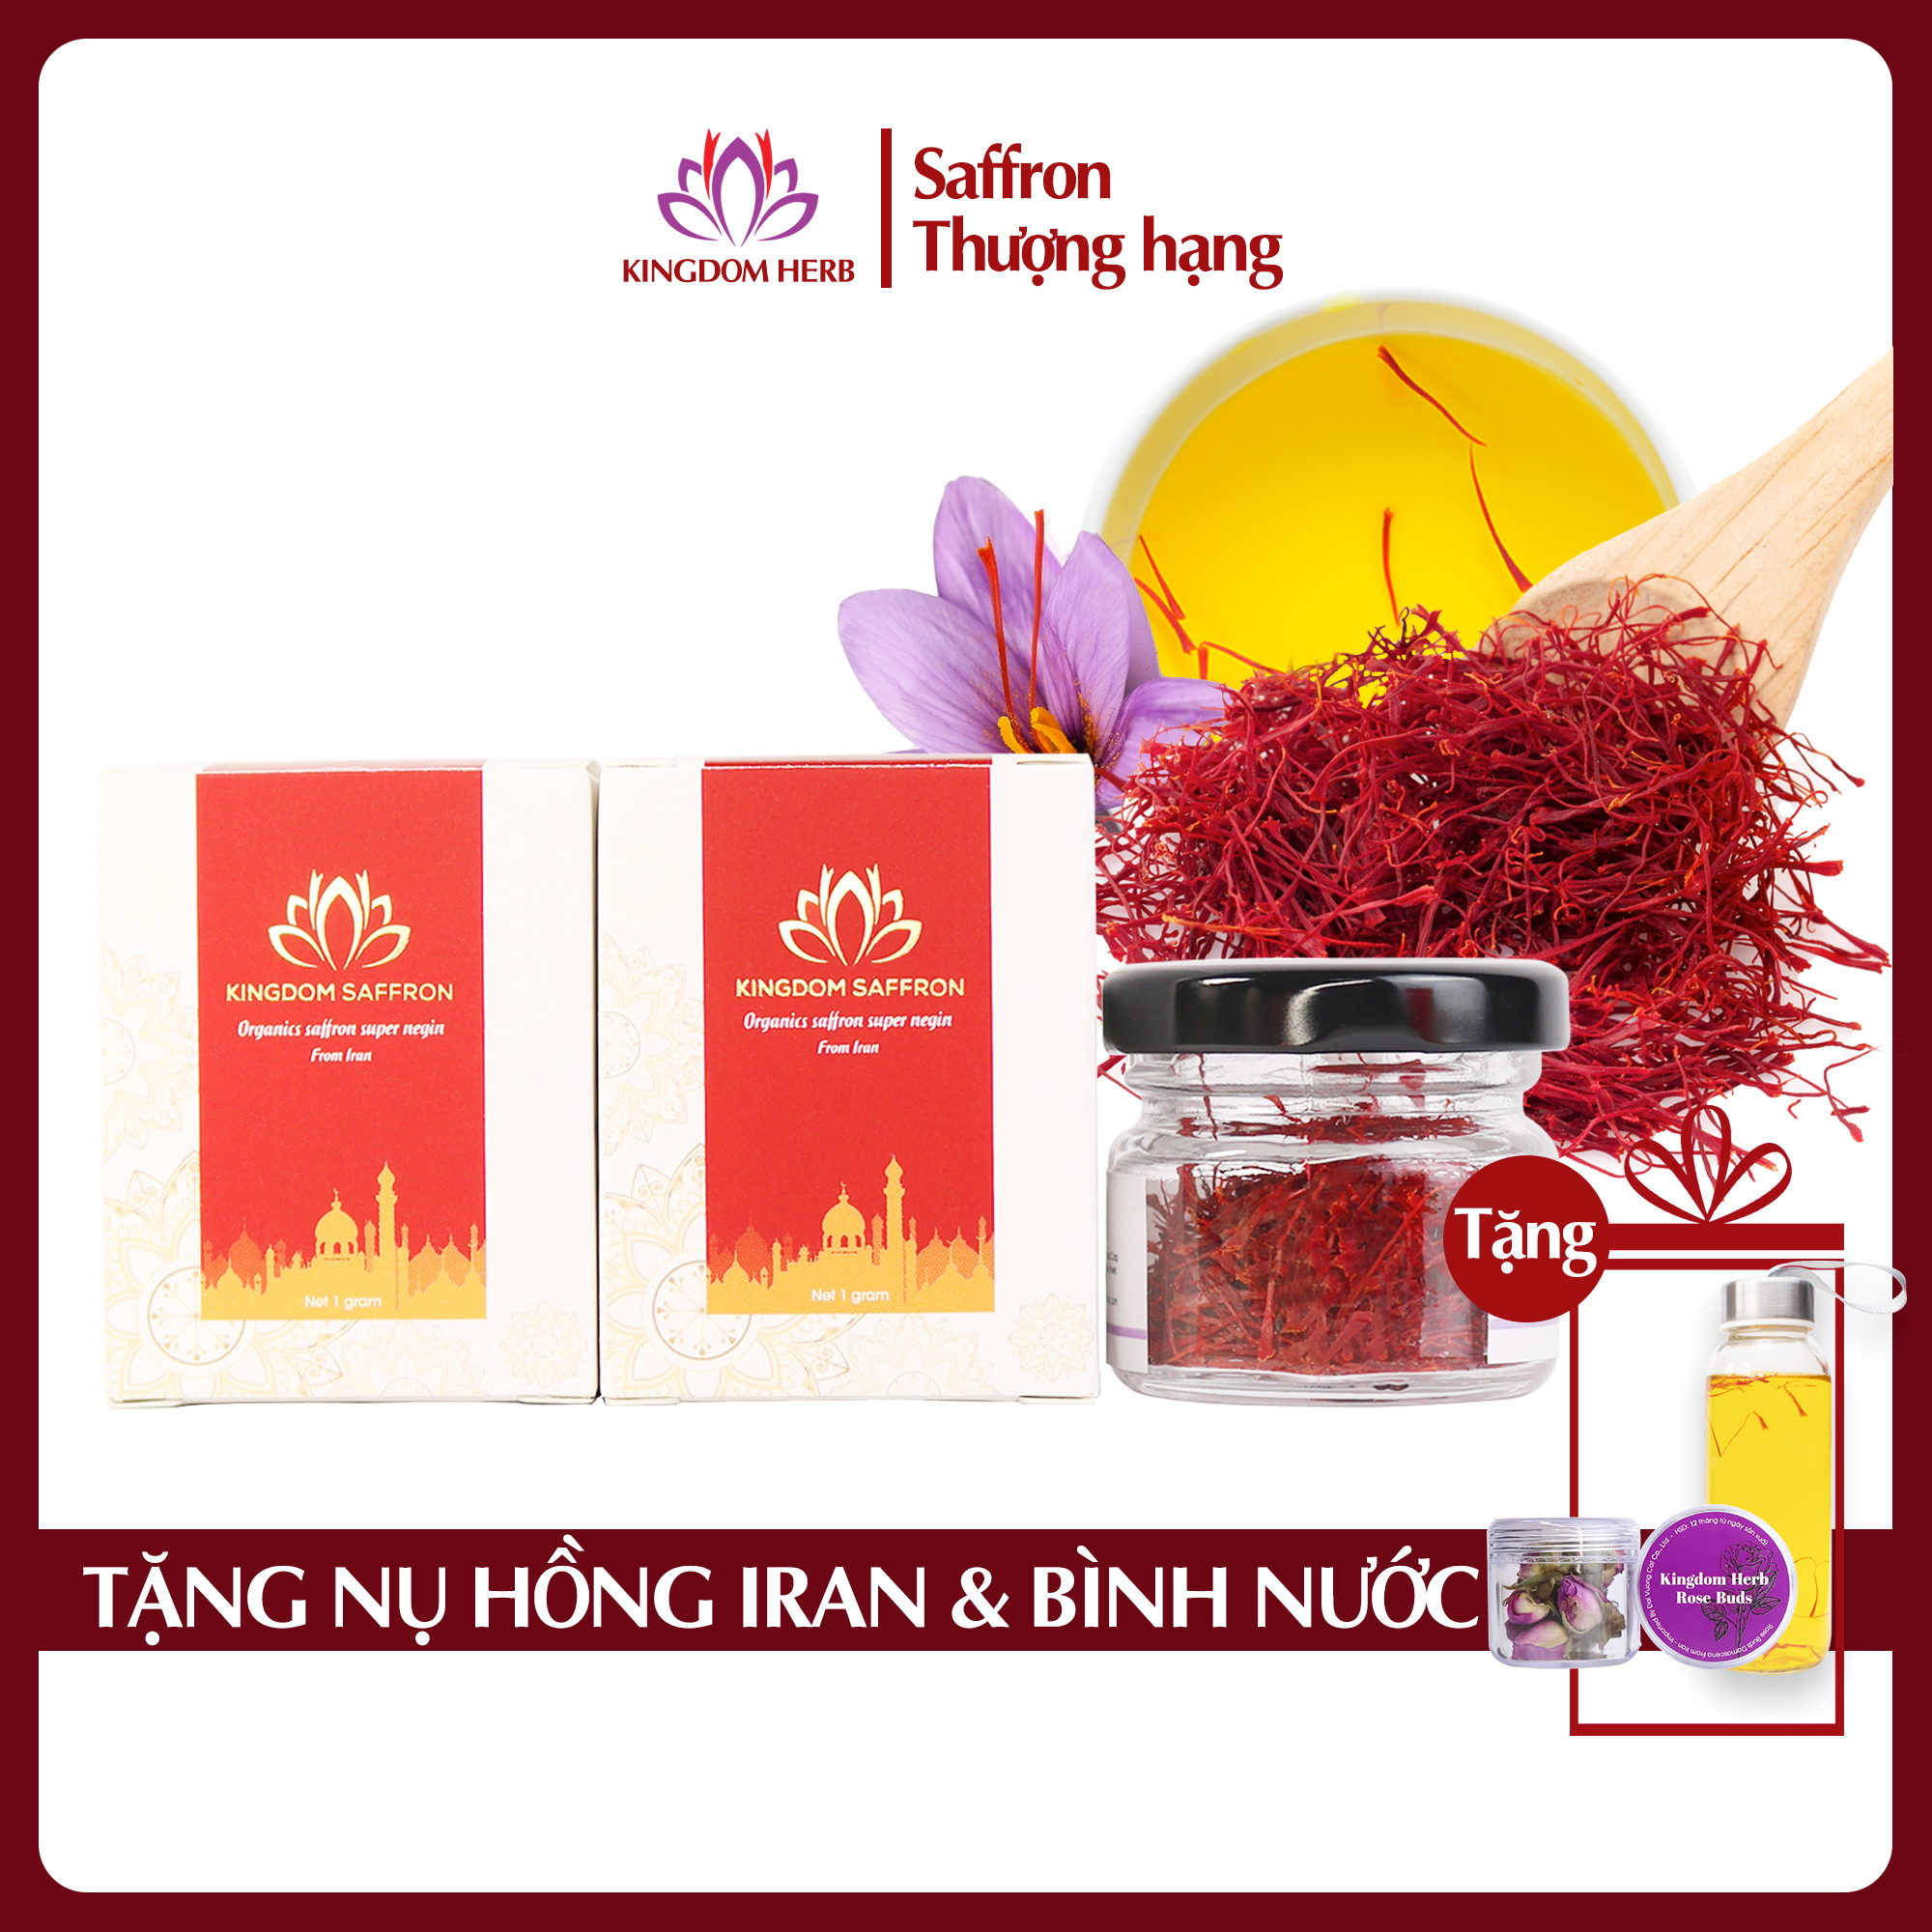 Combo 2 hộp (hộp/1gr) saffron Kingdom Herb, nhụy hoa nghệ tây Iran chính hãng super negin thượng hạng (Tặng hộp nụ hồng khô Iran 3g và bình nước thủy tinh)